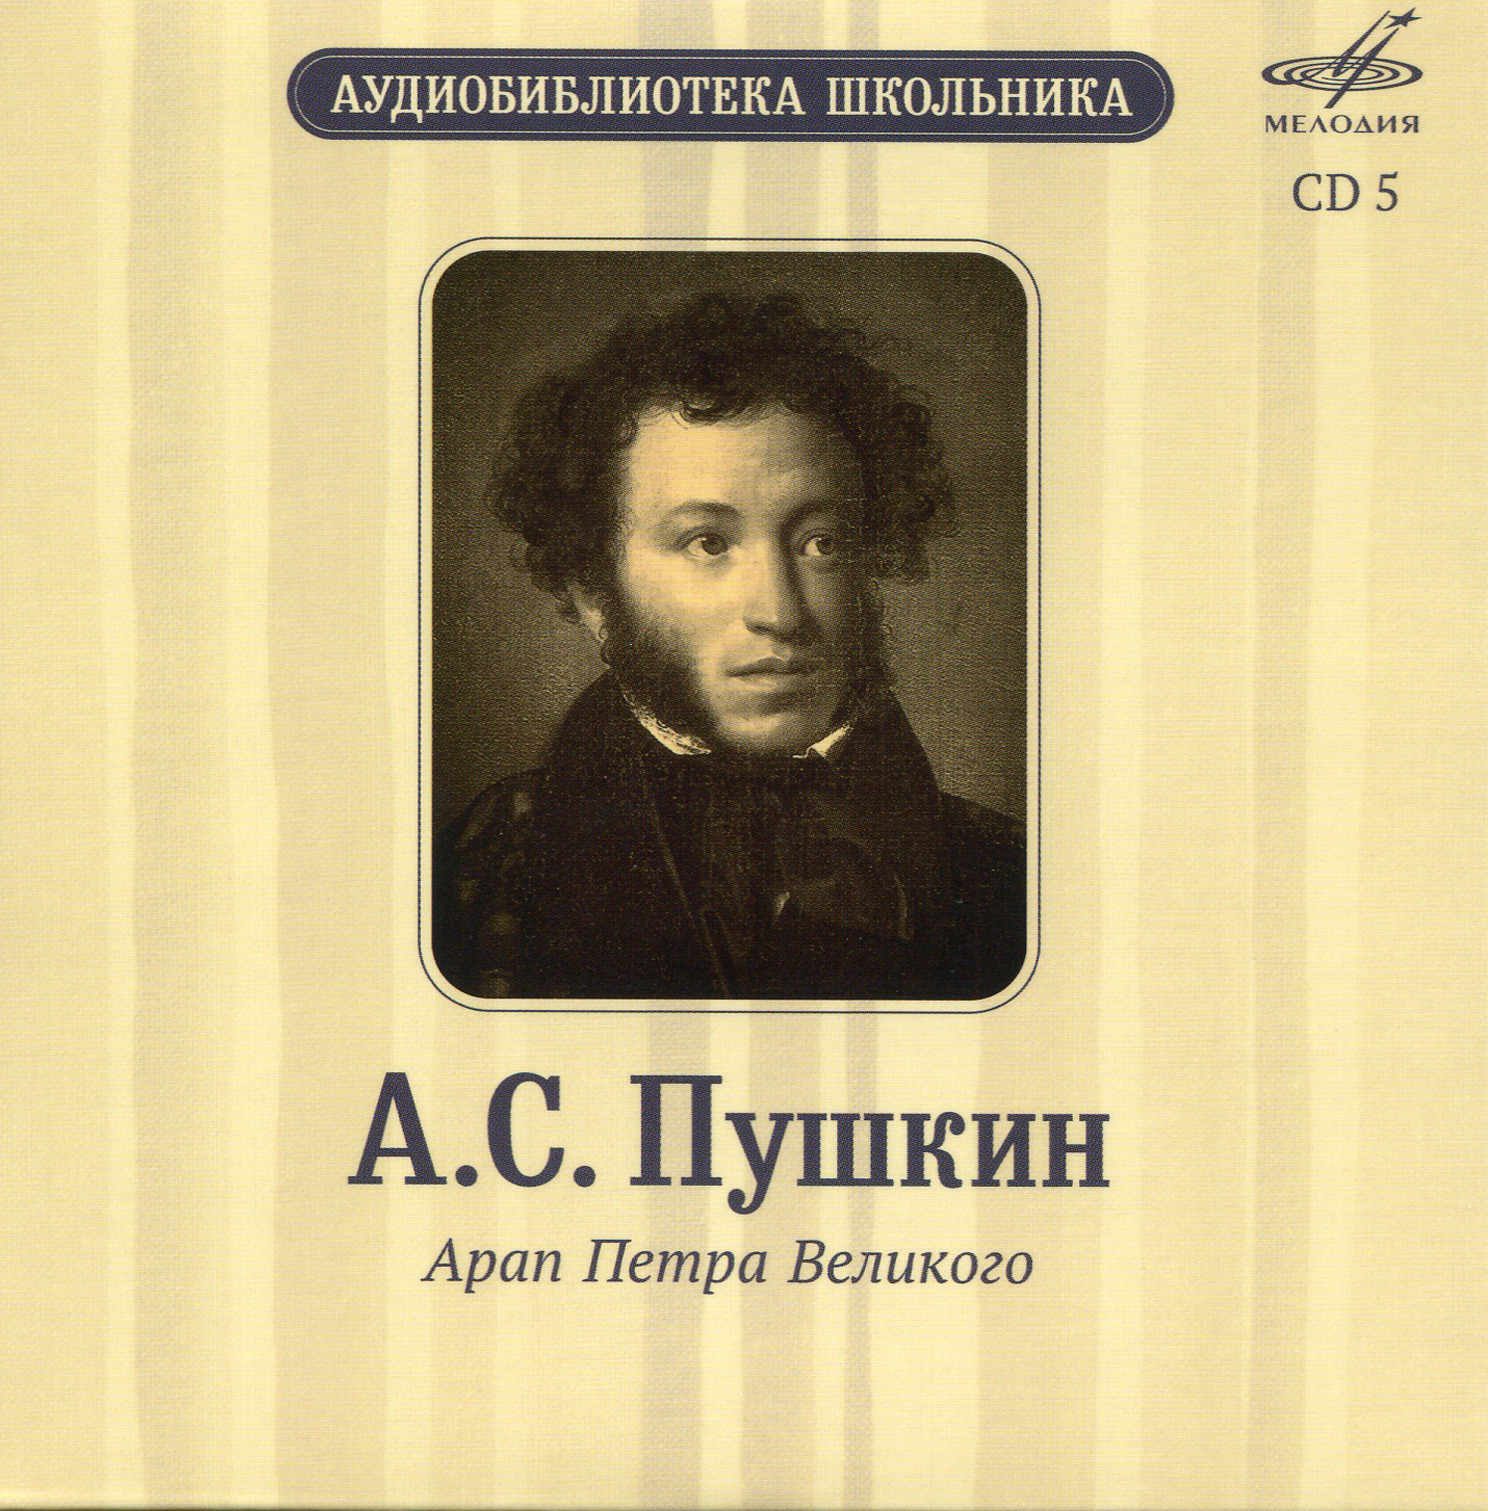 Аудиобиблиотека школьника. А. С. Пушкин. Том 2 (5 CD)